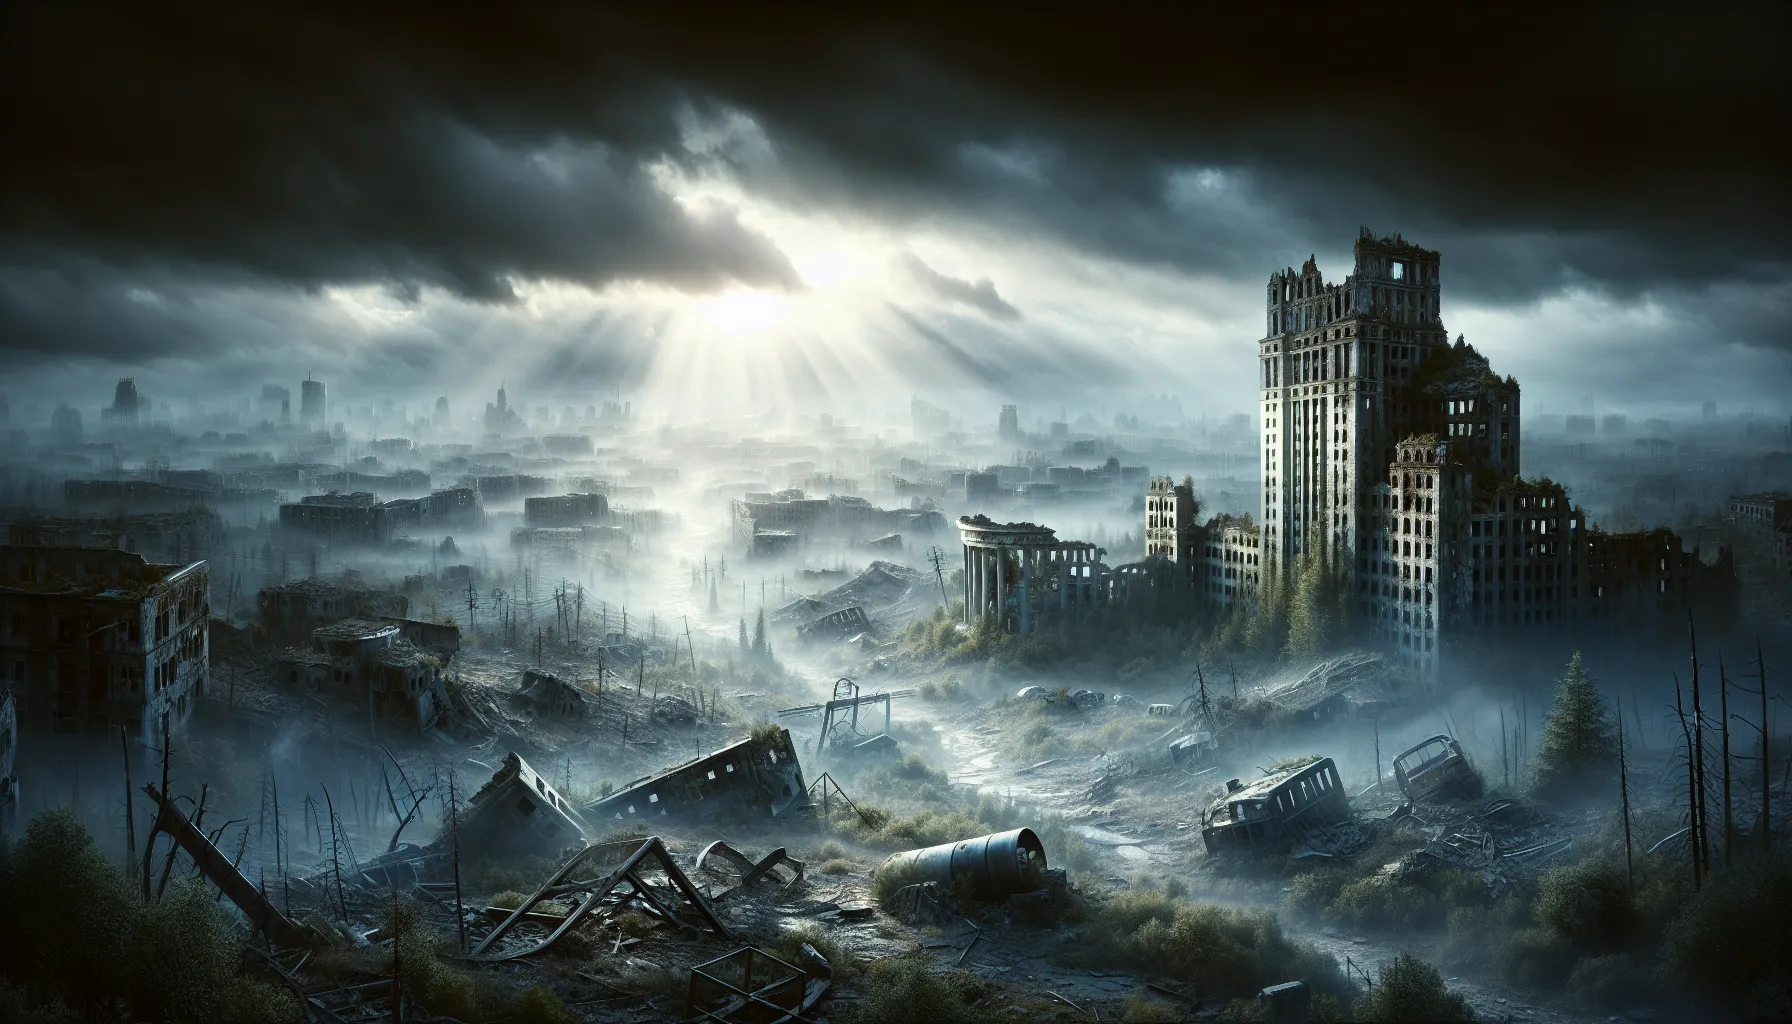 Imagen ilustrativa de un paisaje desolado y apocalíptico